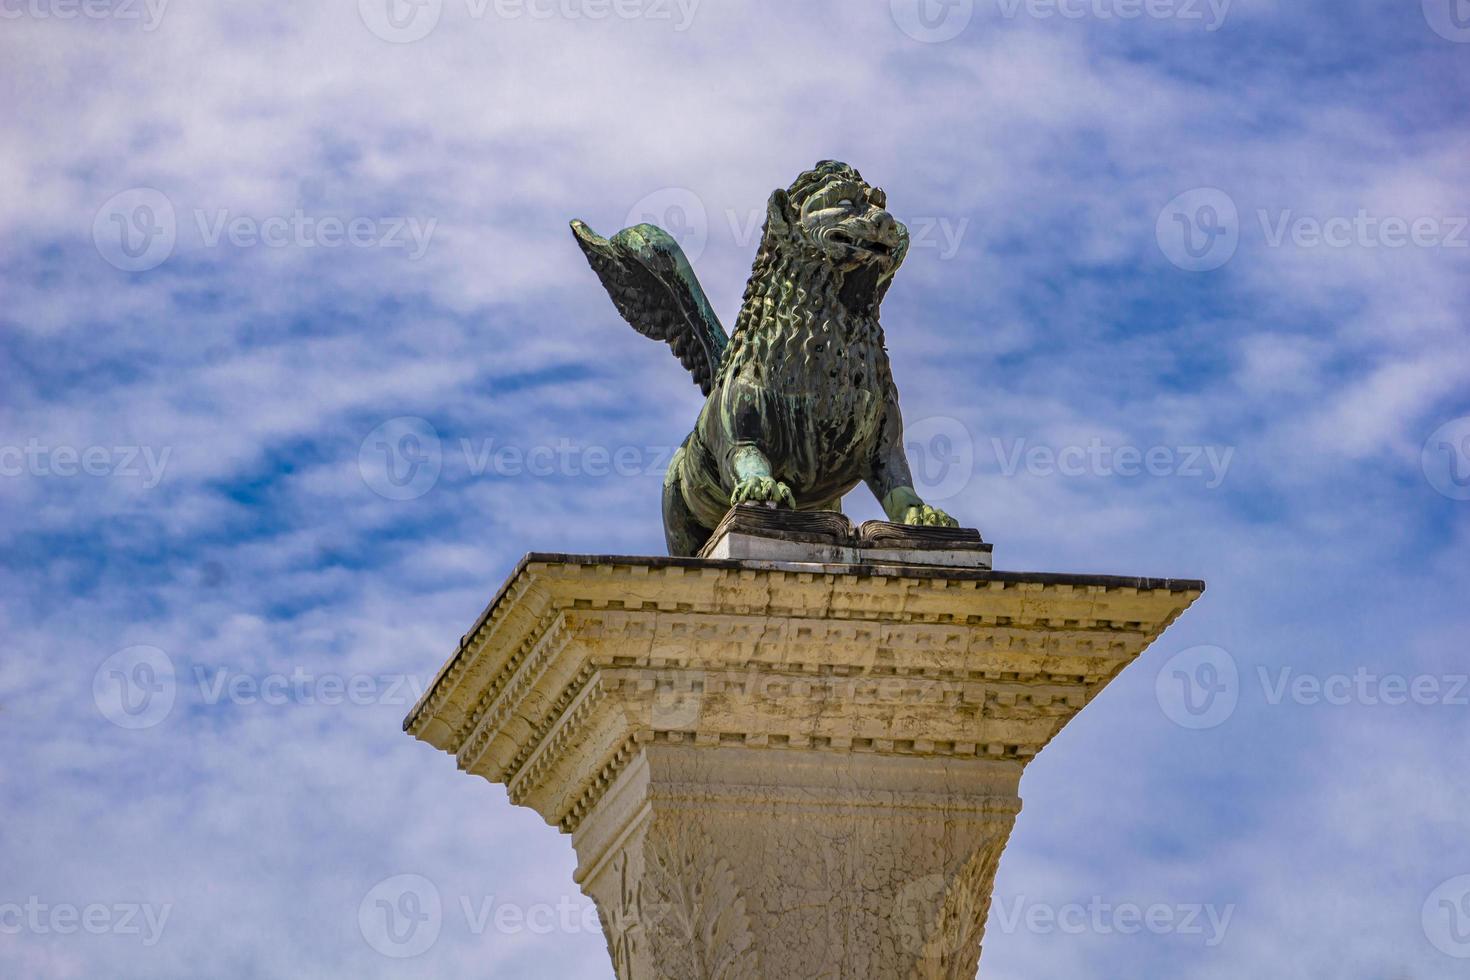 skulptur som visar en bild av lejon med vingar, symbol för Venedig, på toppen av kolonnen i San Marco, Italien foto